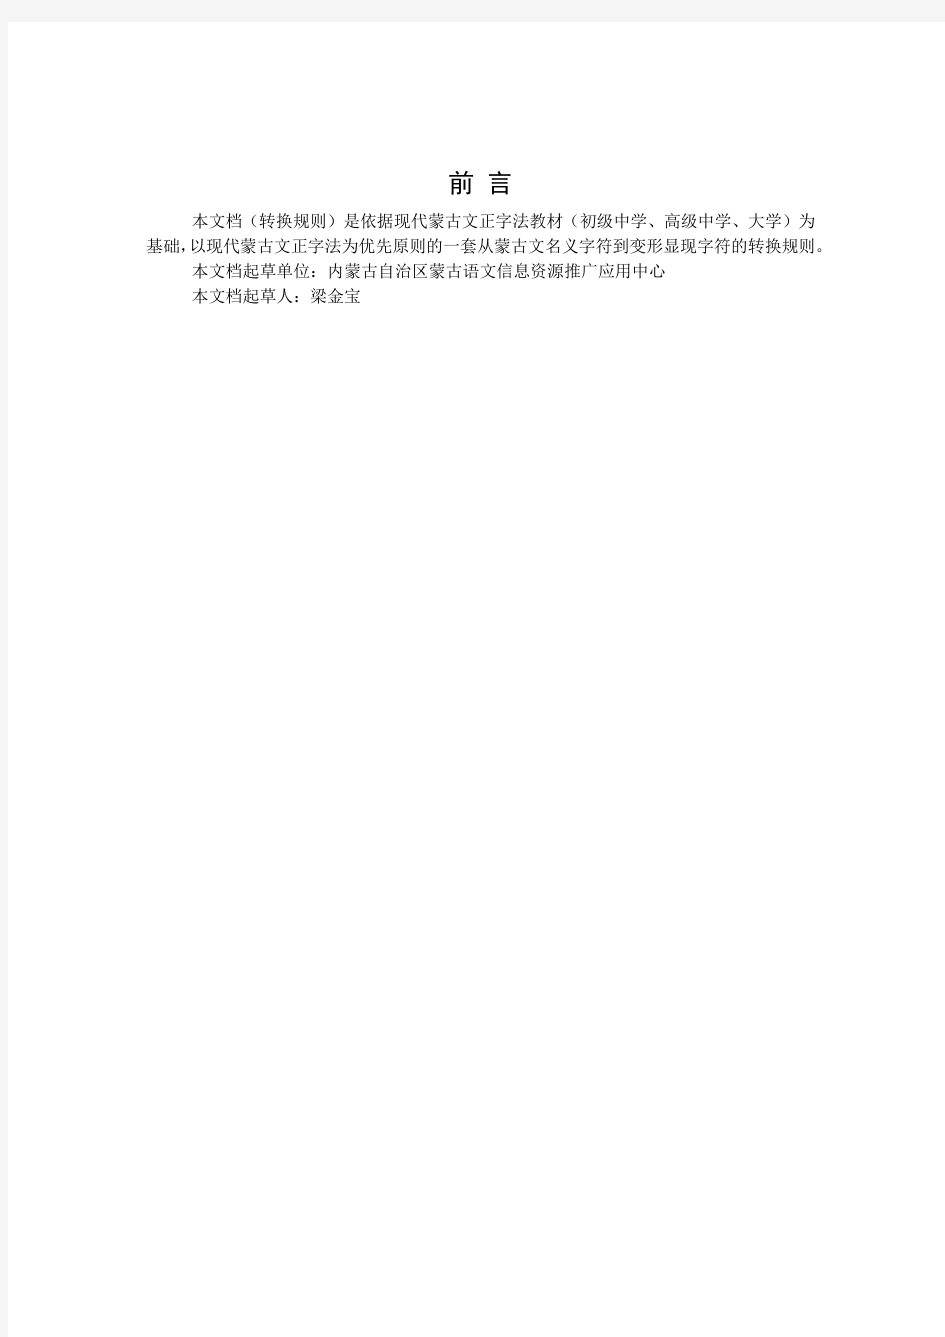 MGC01-01-传统蒙古文名义字符到变形显现字符转换规则(中文)